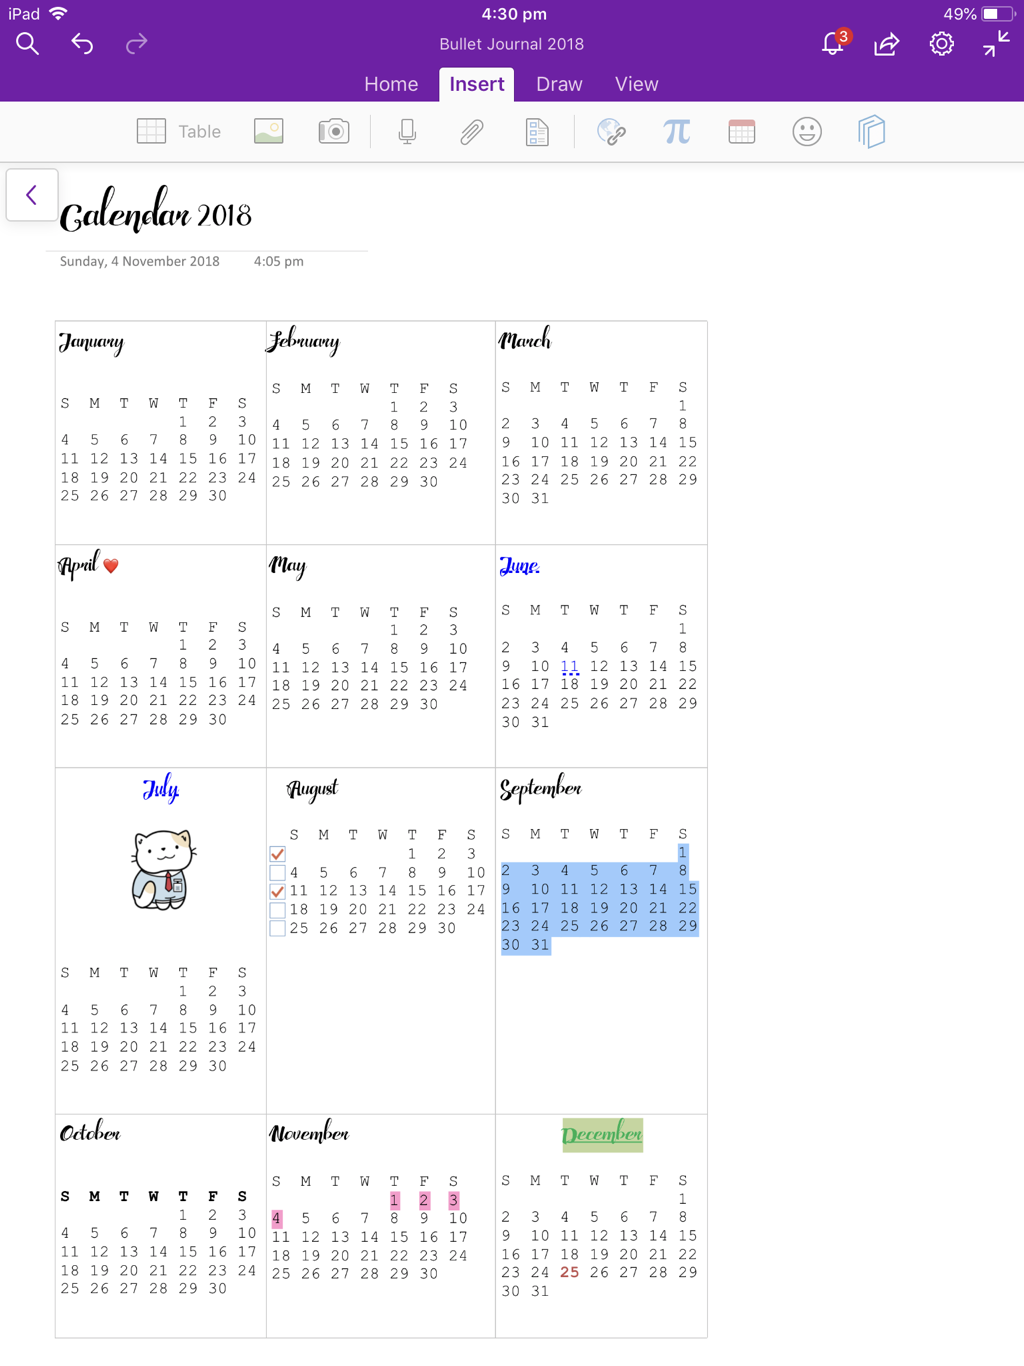 OneNote Bullet Journal Calendar Layout